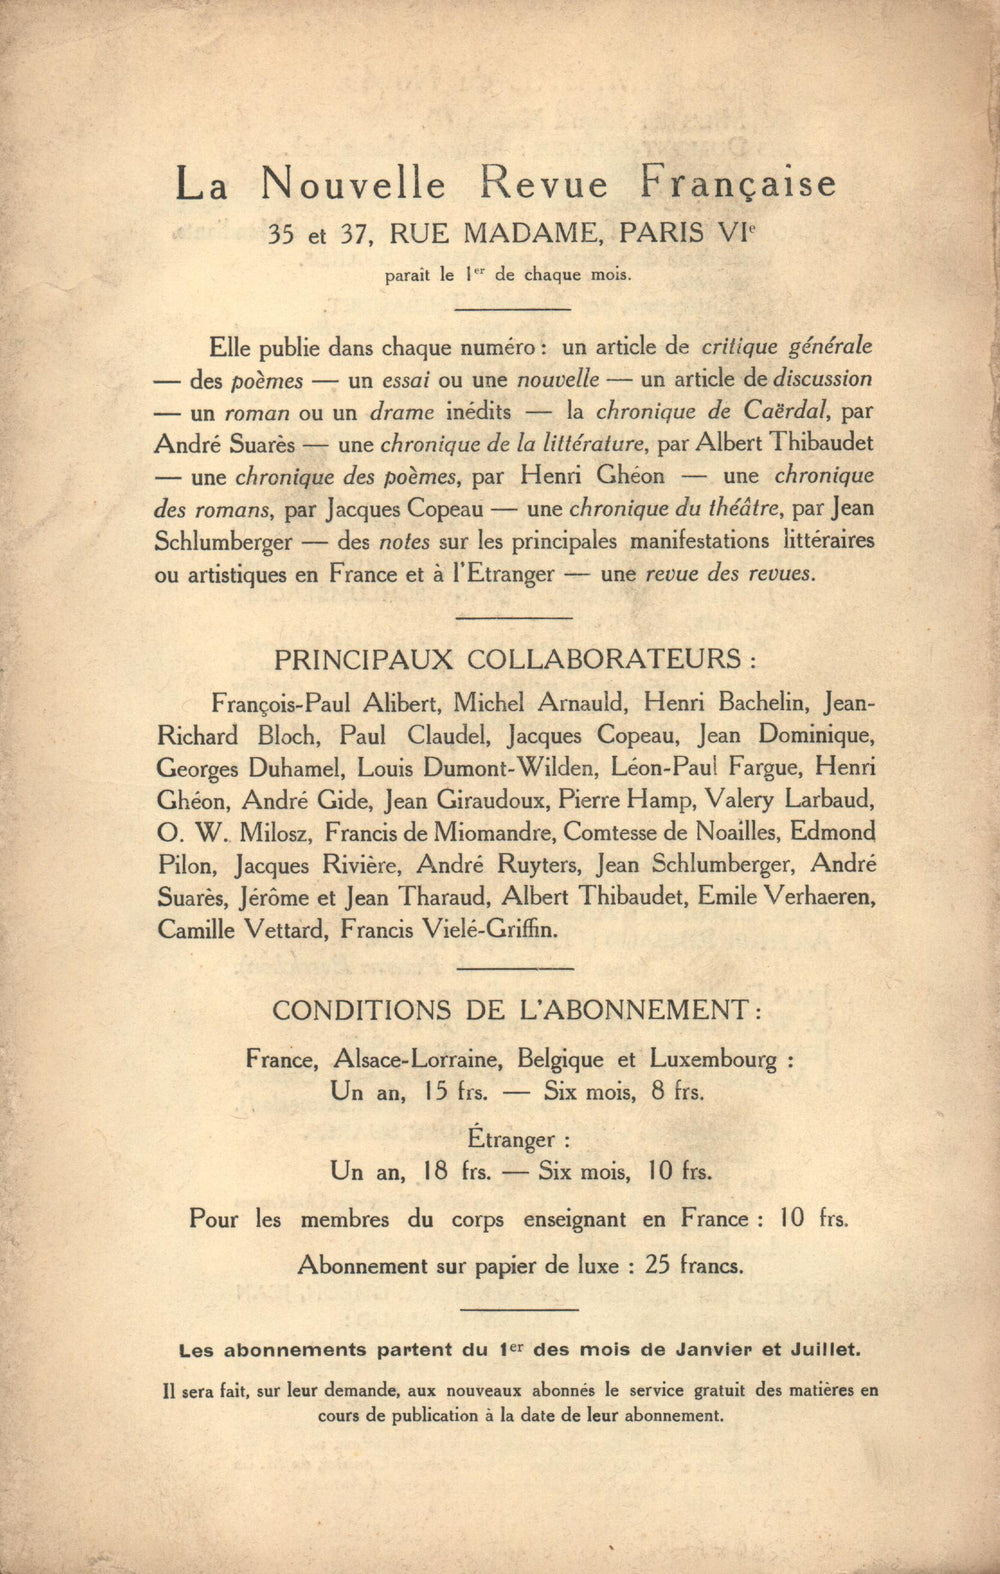 La Nouvelle Revue Française N' 47 (Novembre 1912)